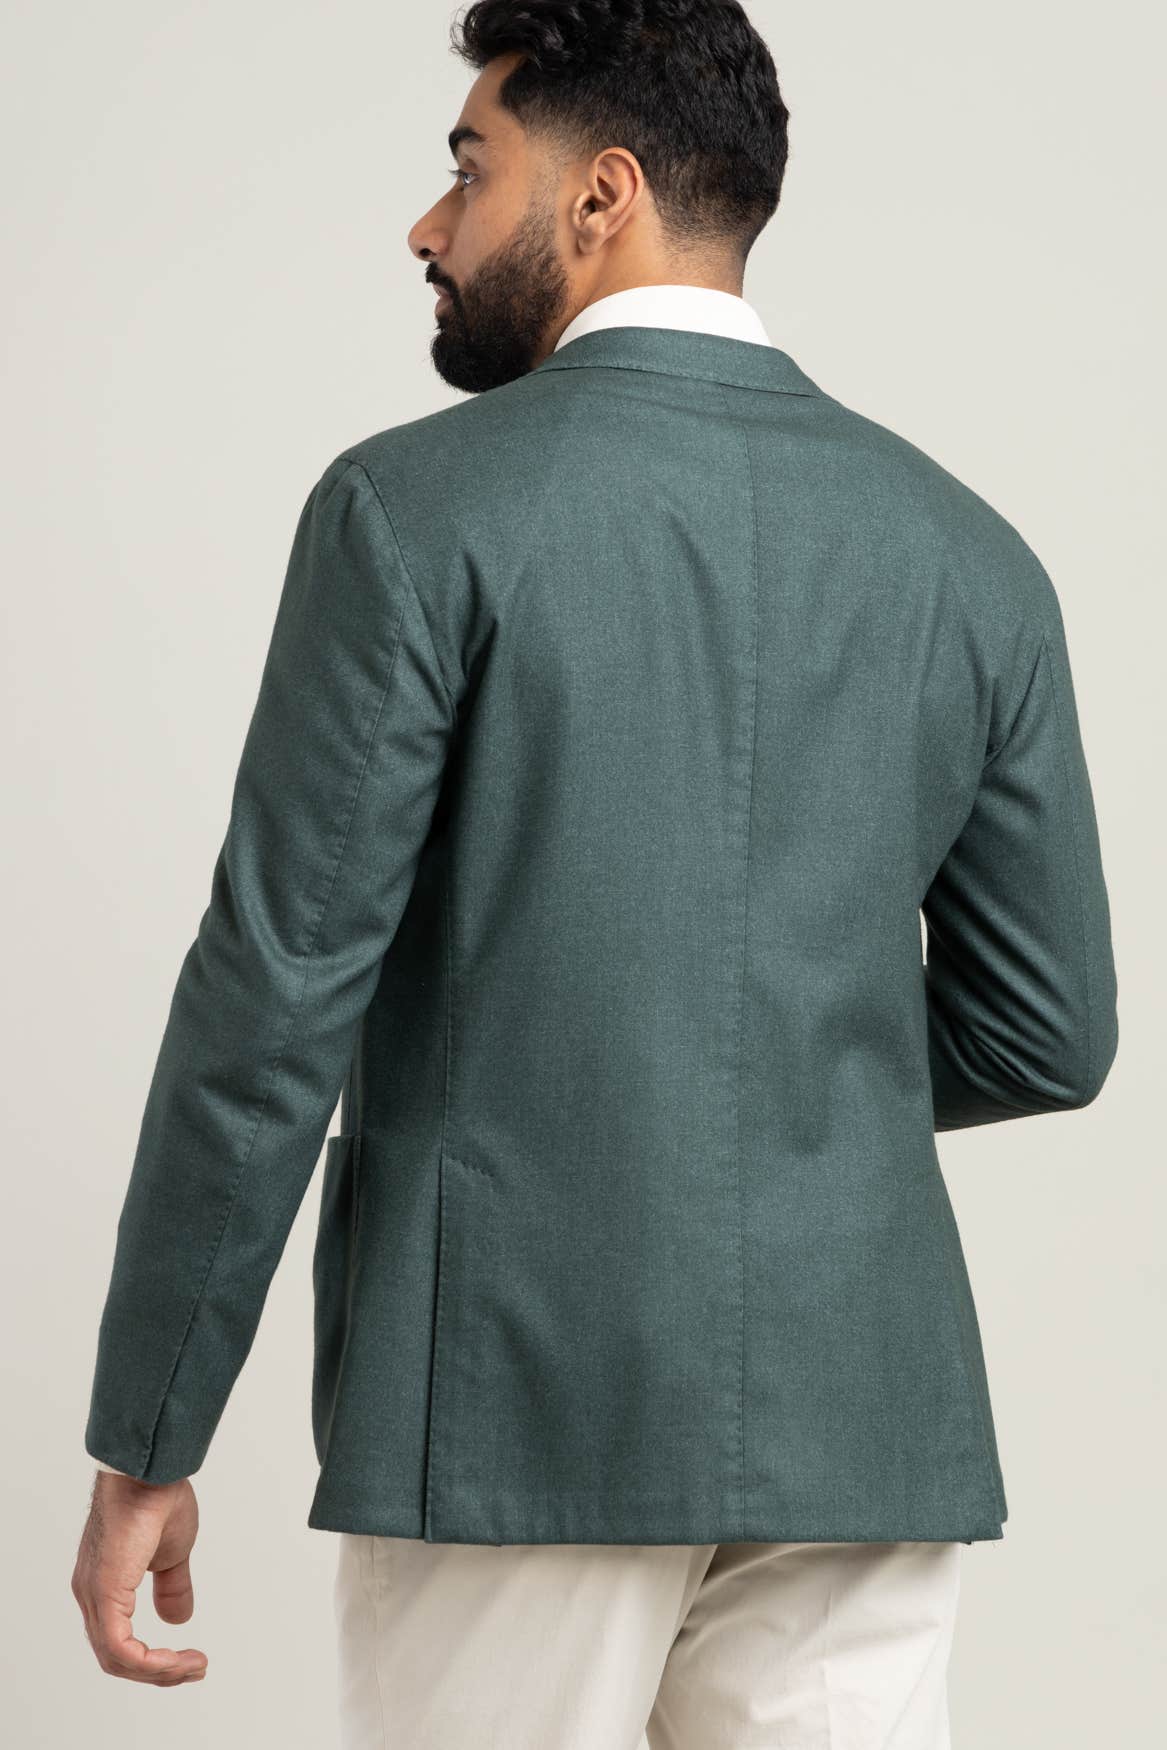 Green Wool Sport Jacket